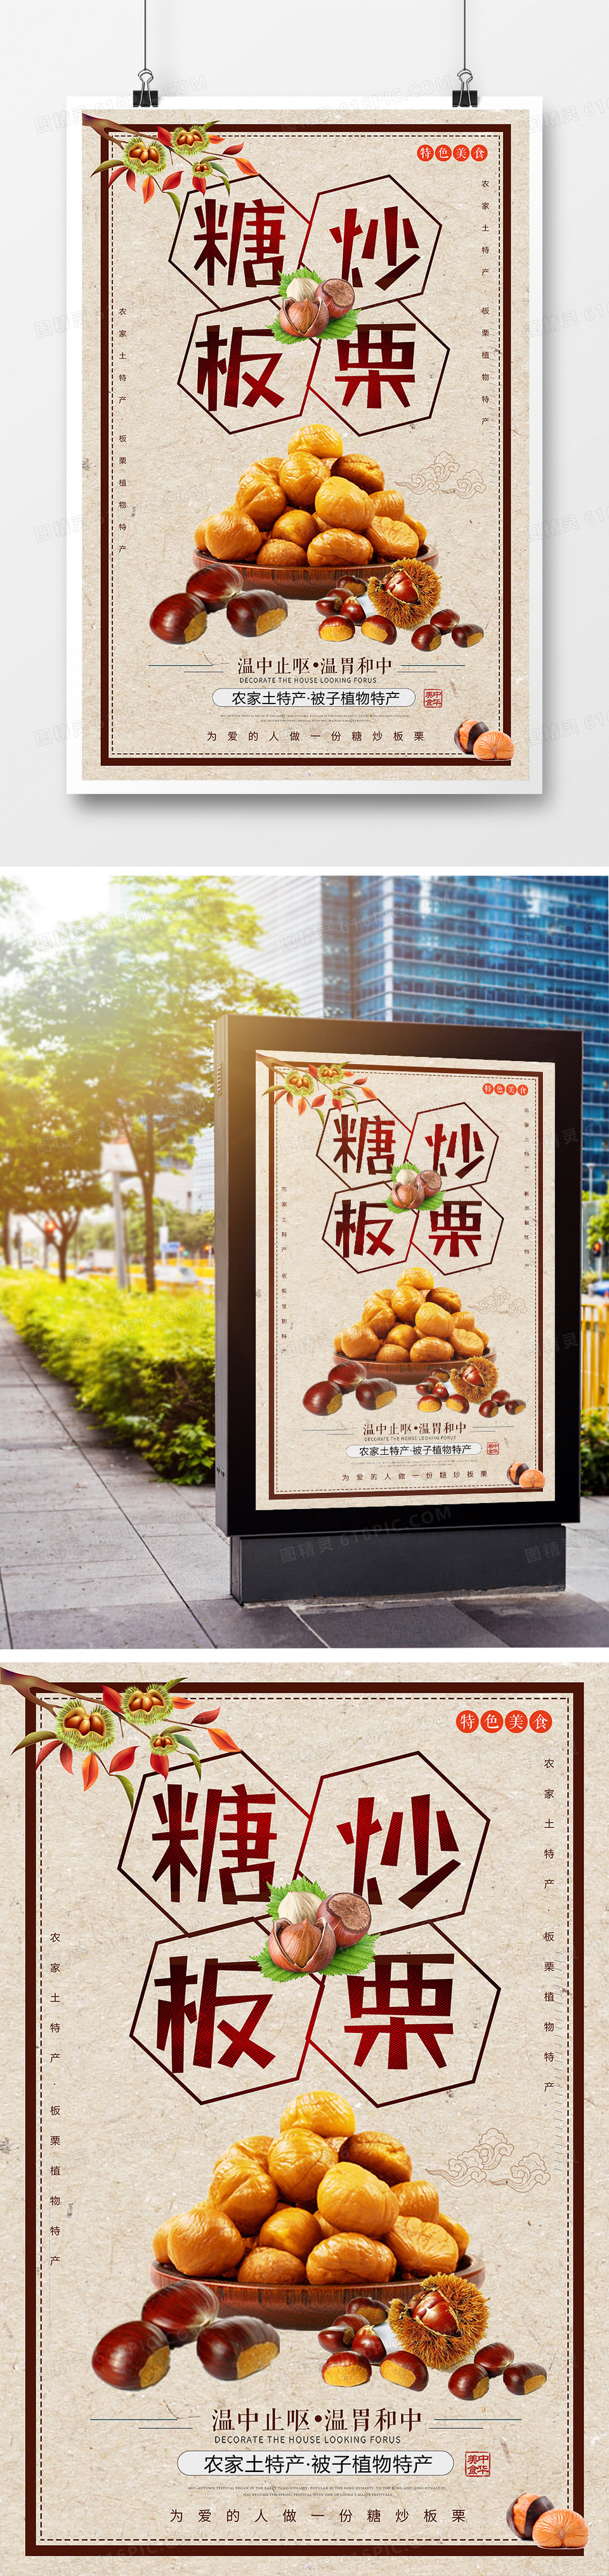 中国风简约糖炒板栗美食海报